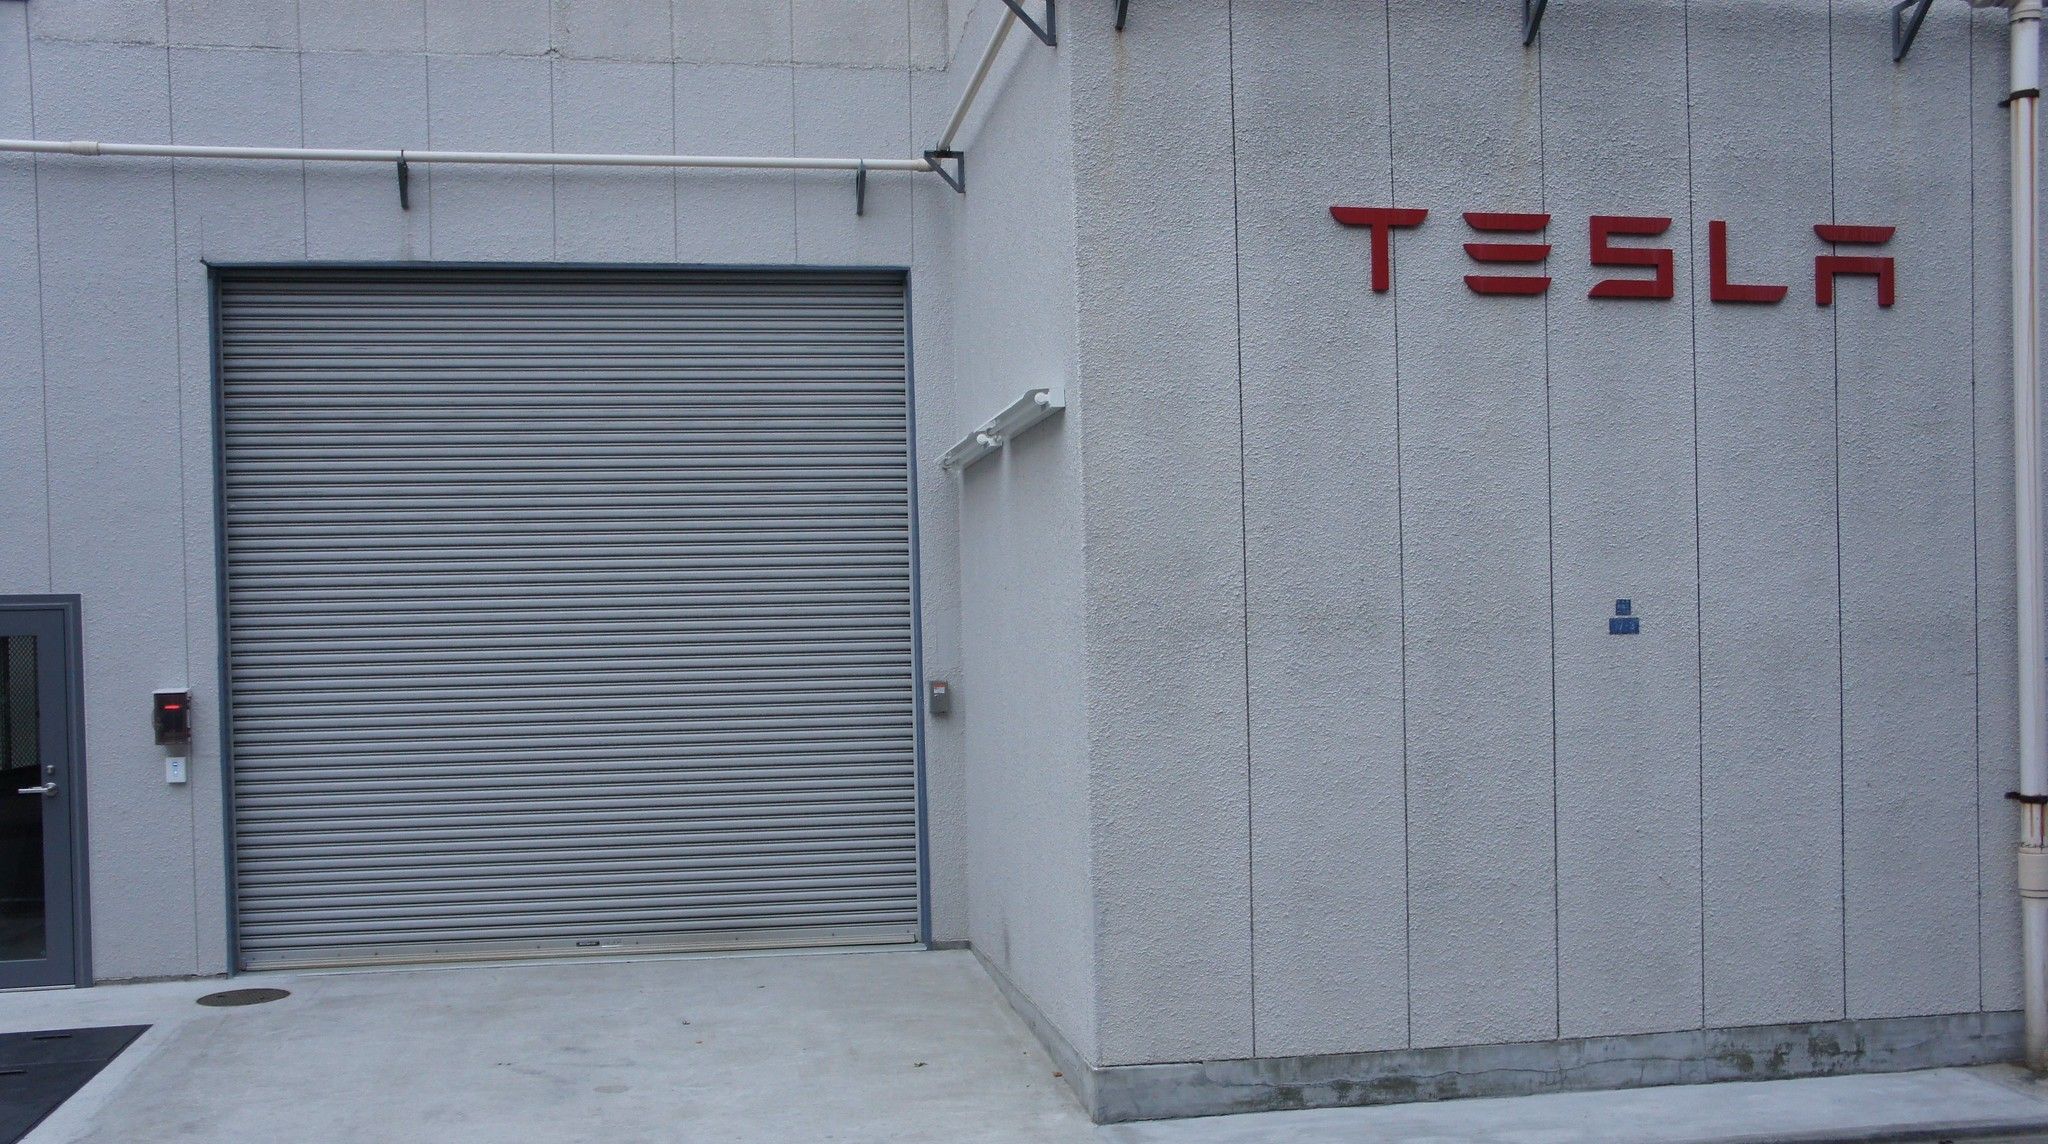 image of tesla garage exterior